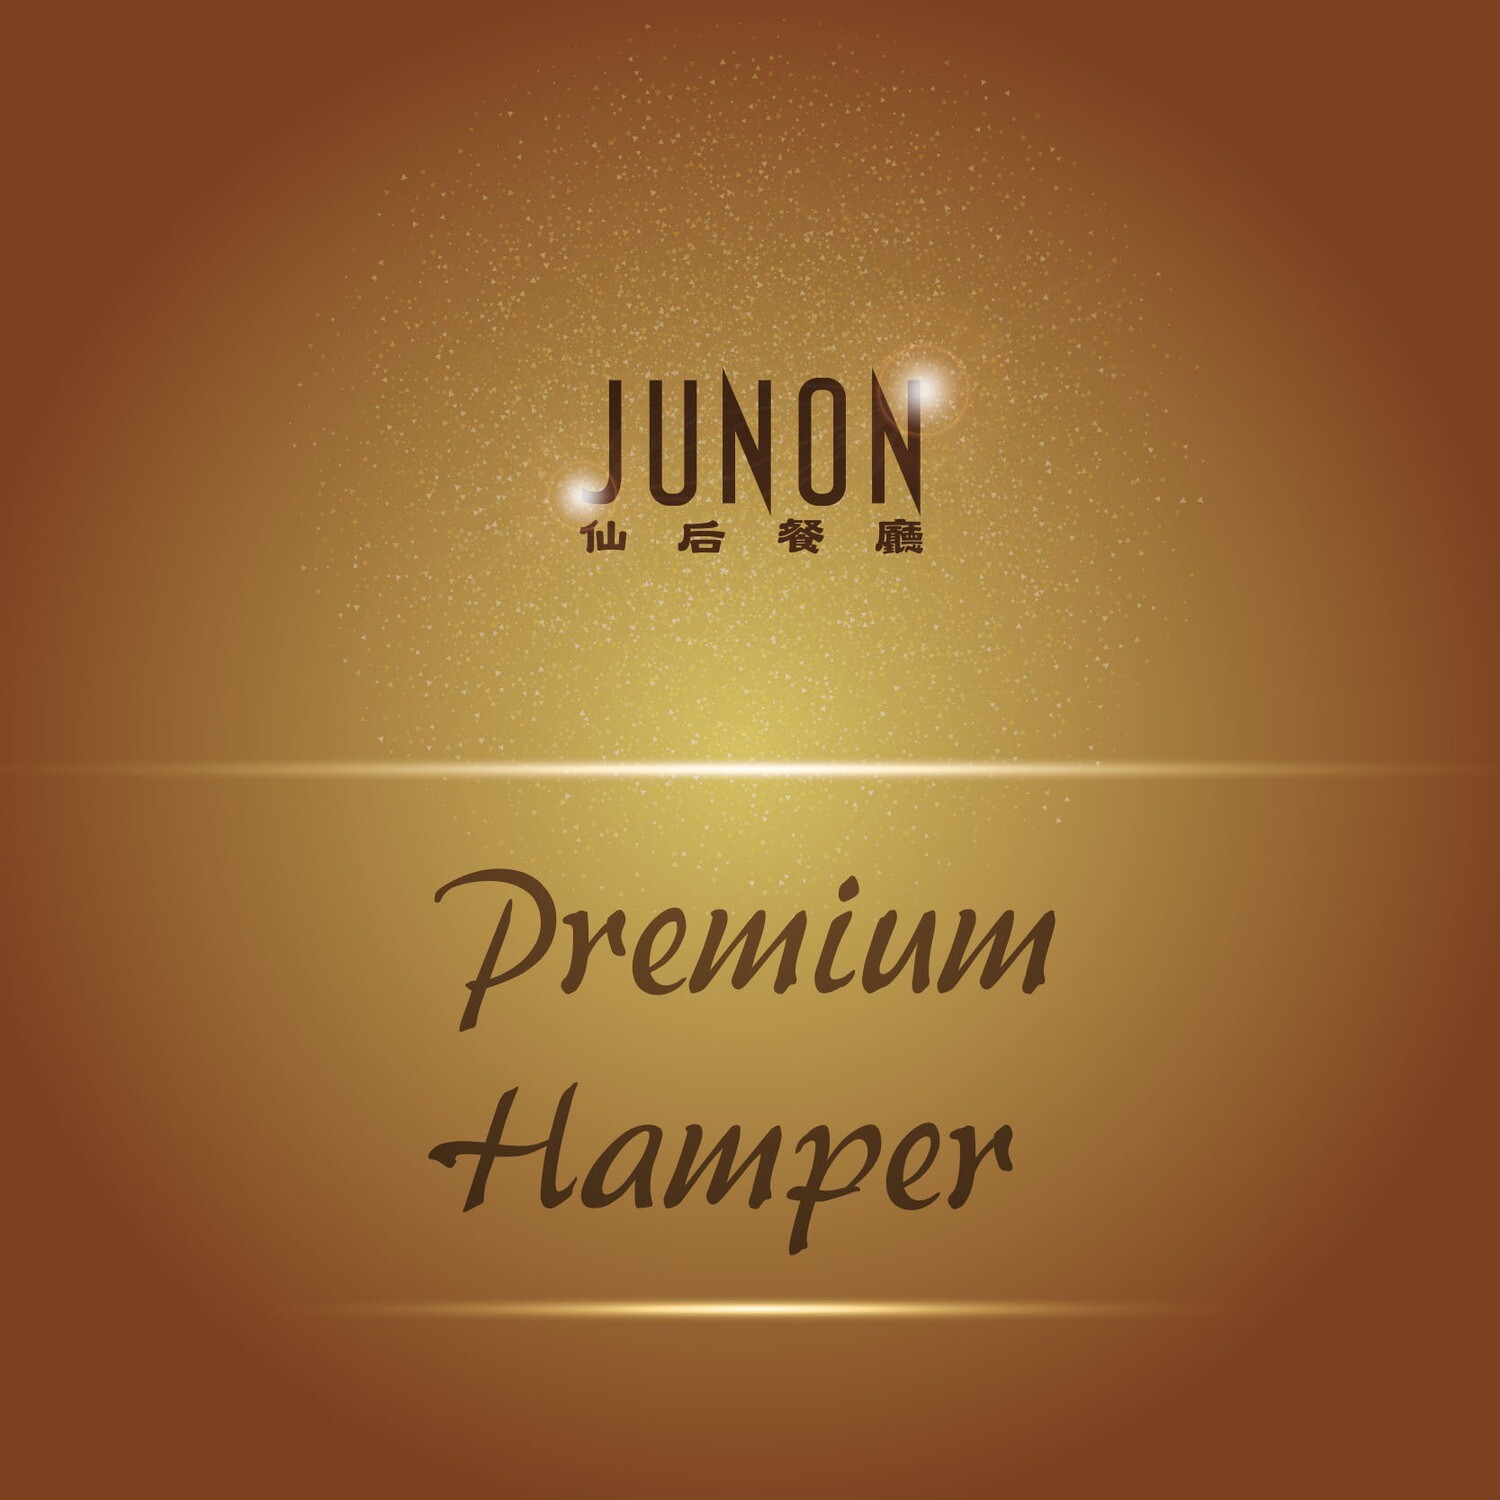 JUNON Premium Hamper 2021